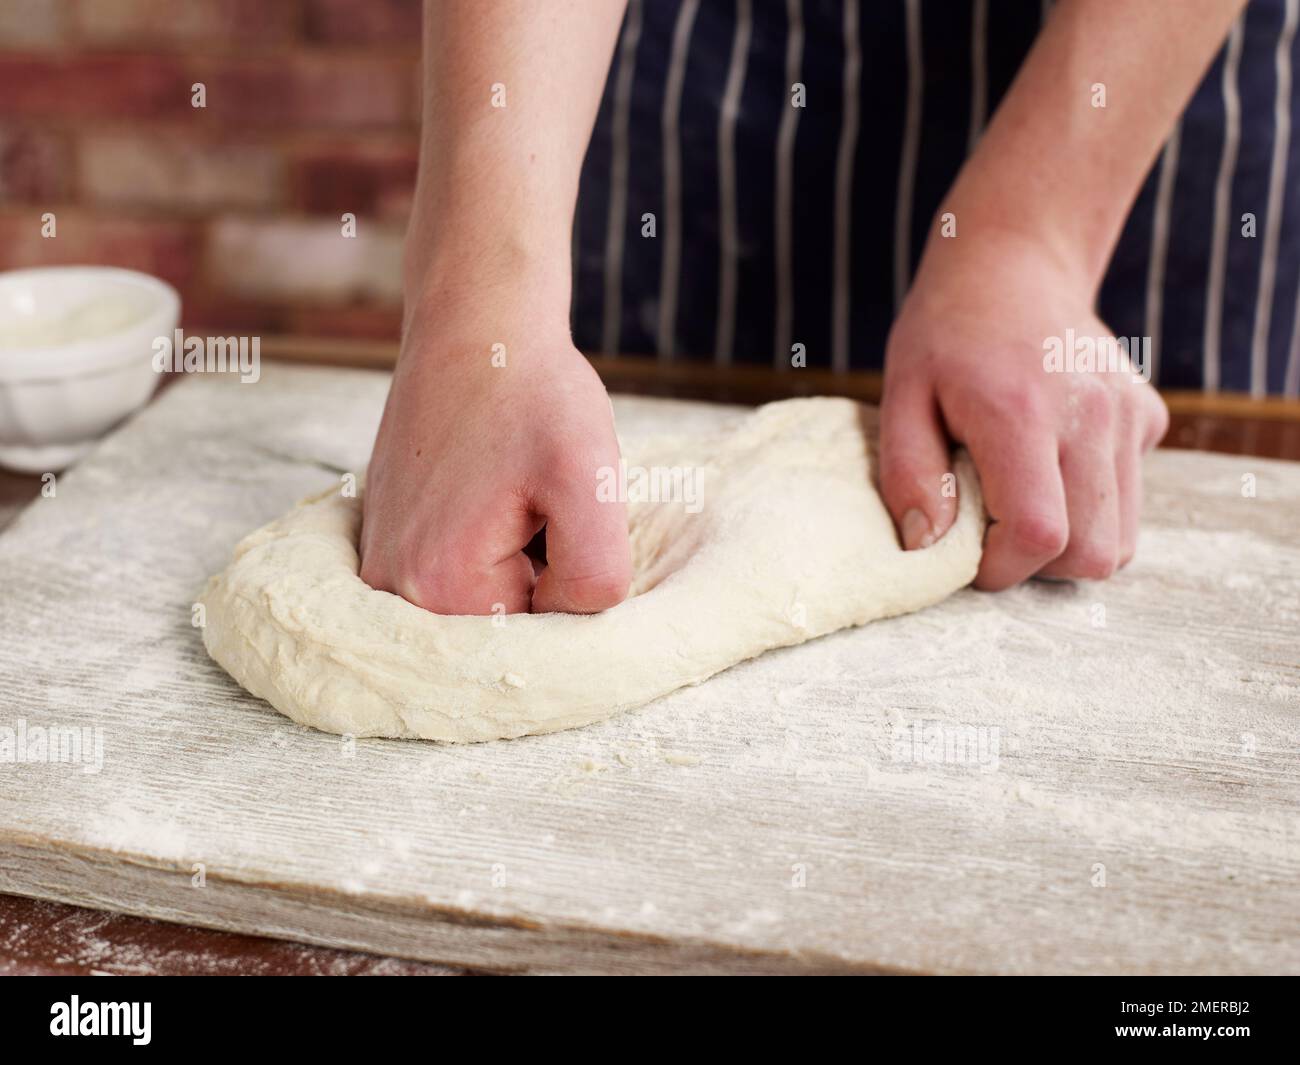 Brot zubereiten, Teig auf Mehlfläche kneten Stockfoto